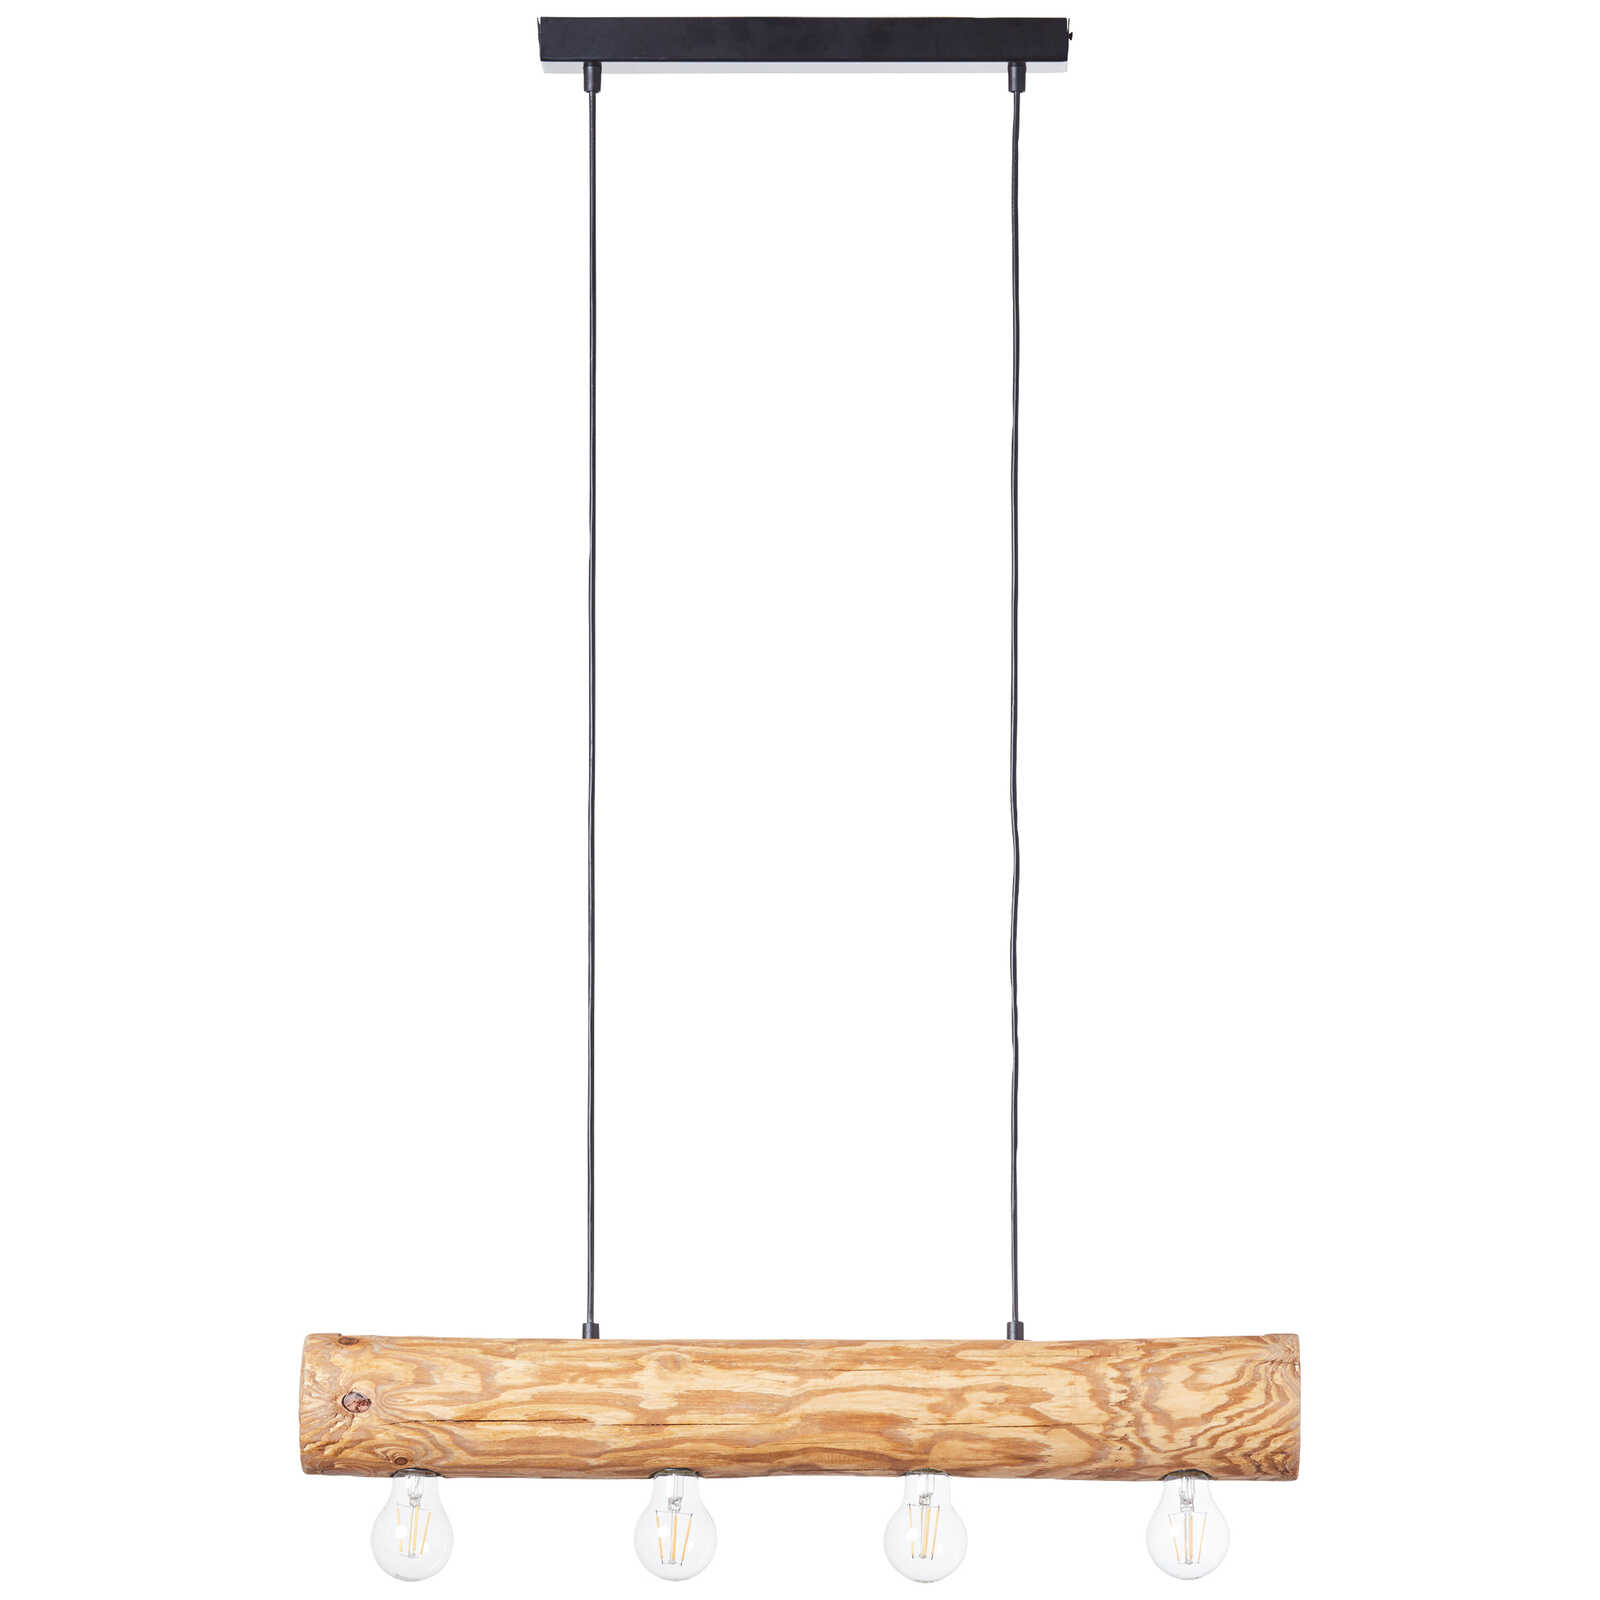             Lámpara colgante de madera - Samuel 1 - Marrón
        